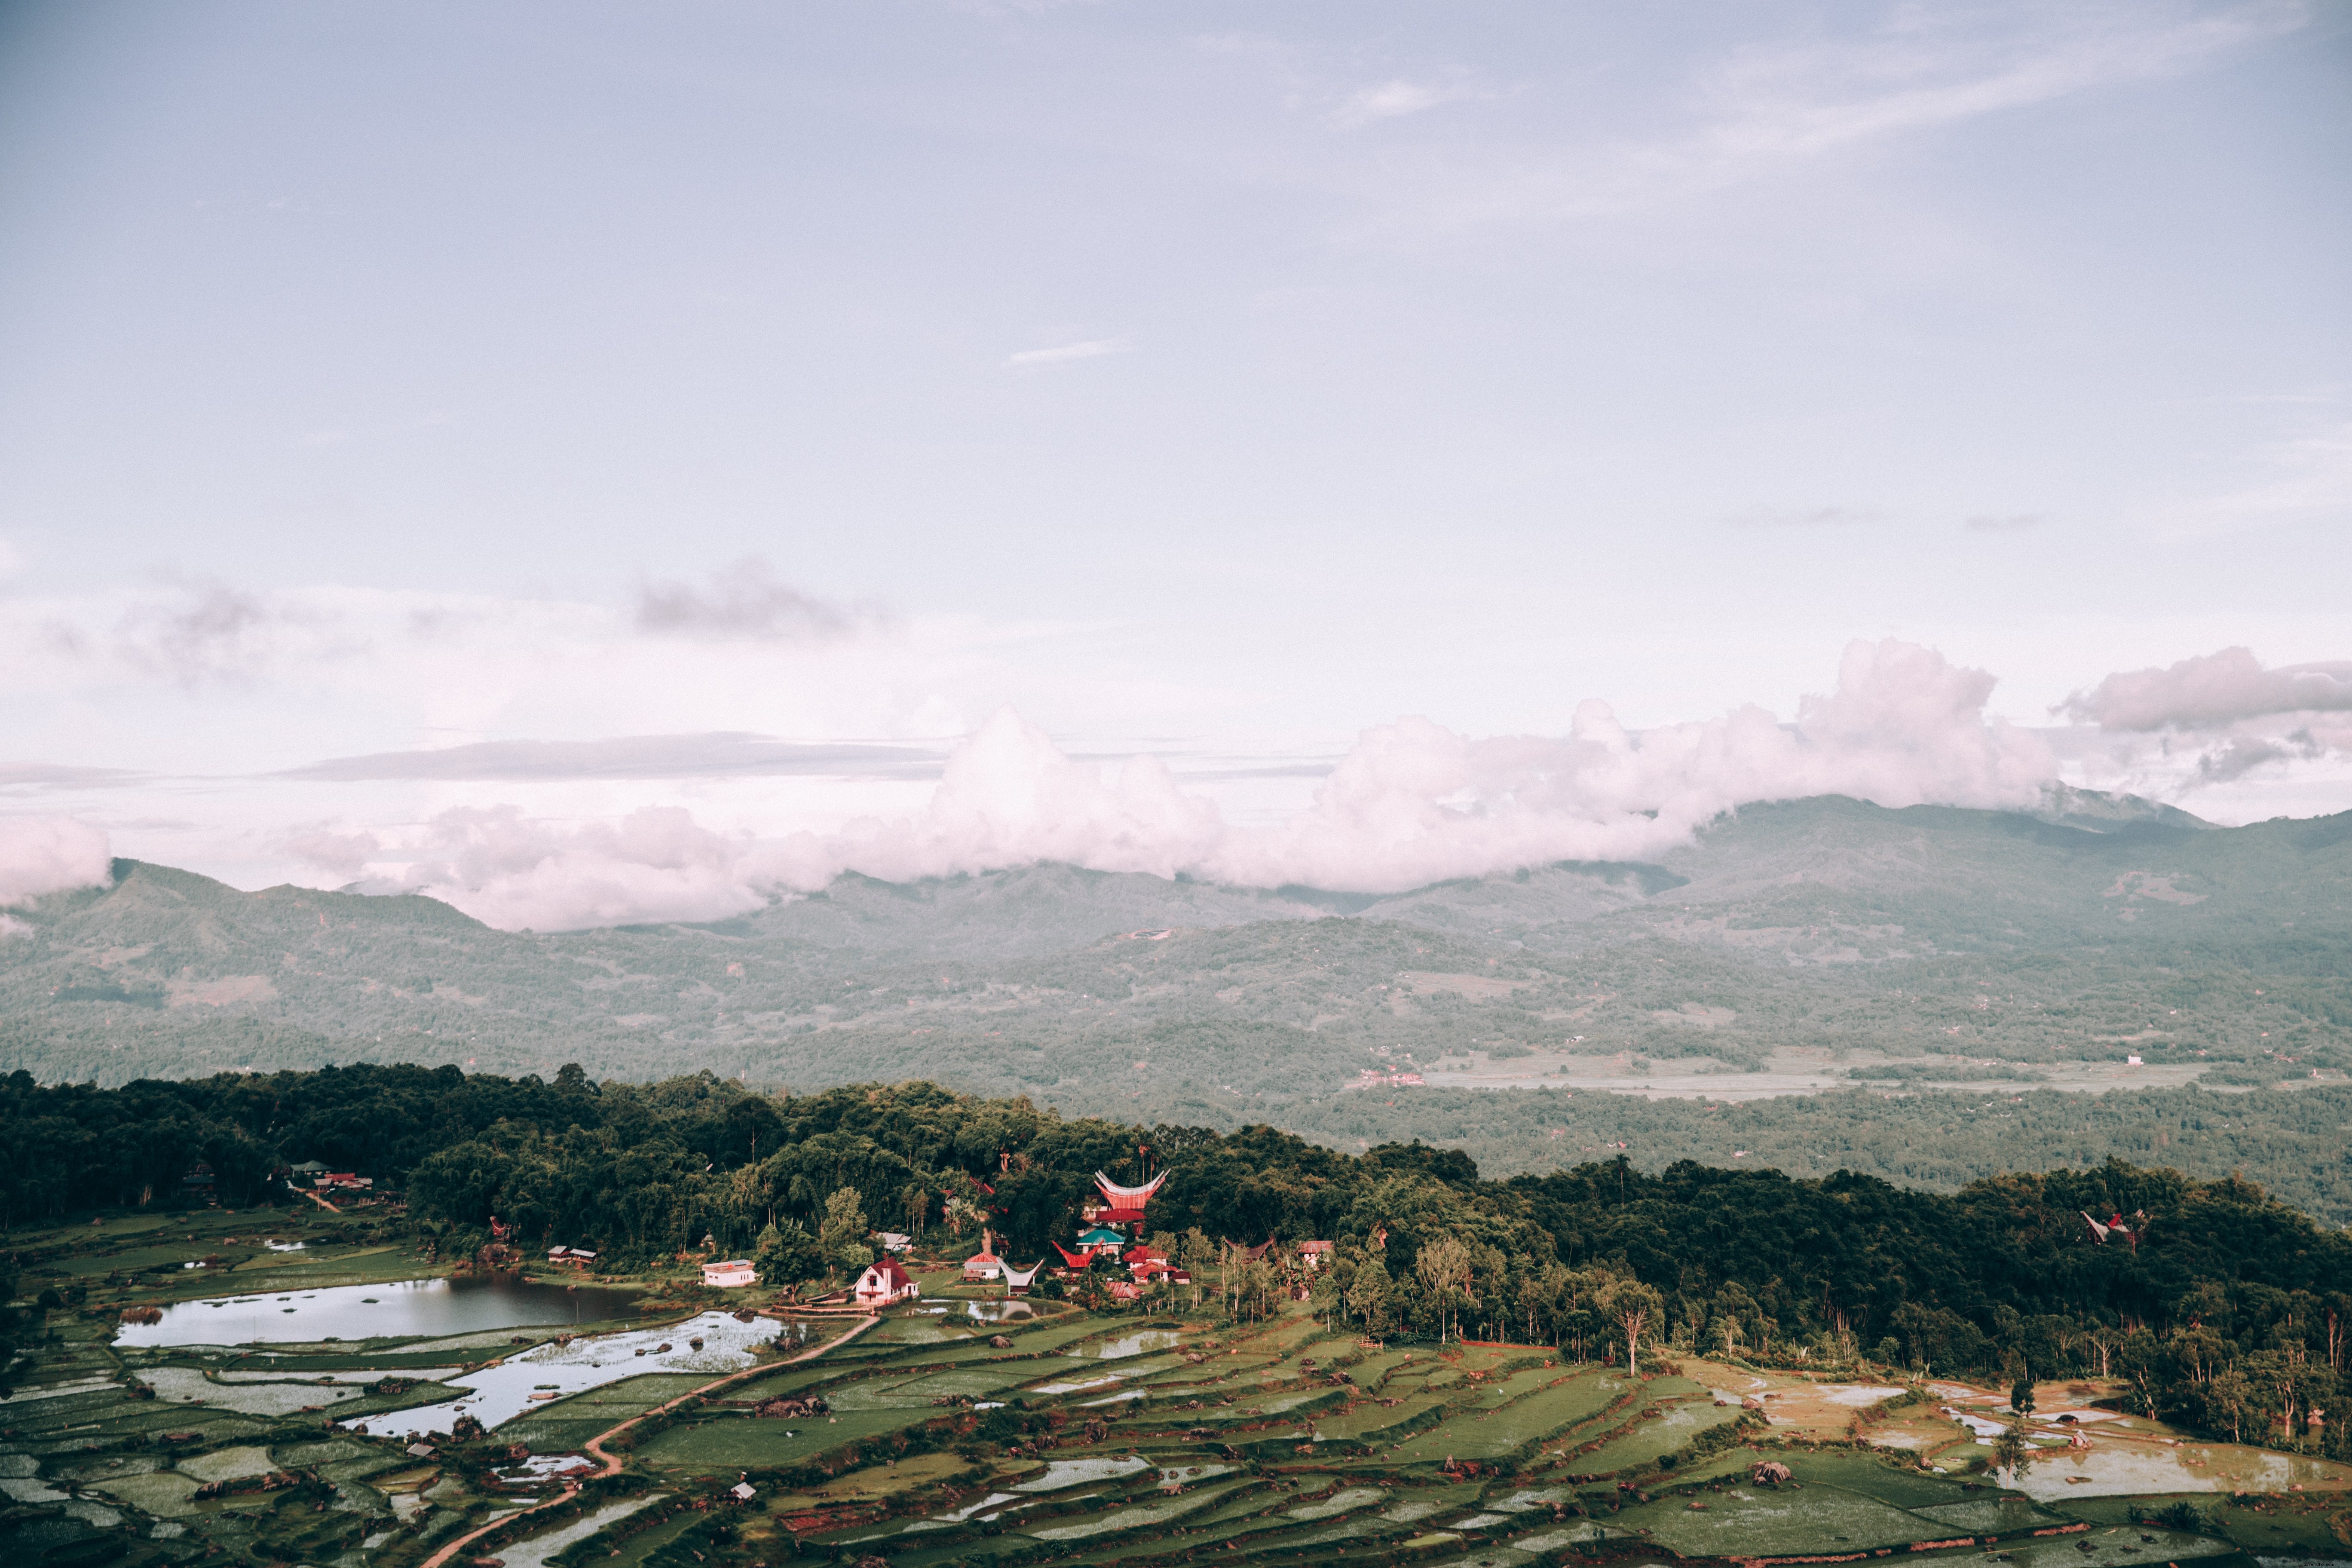 Paisaje de Indonesia cubierto de arrozales y foto del templo 